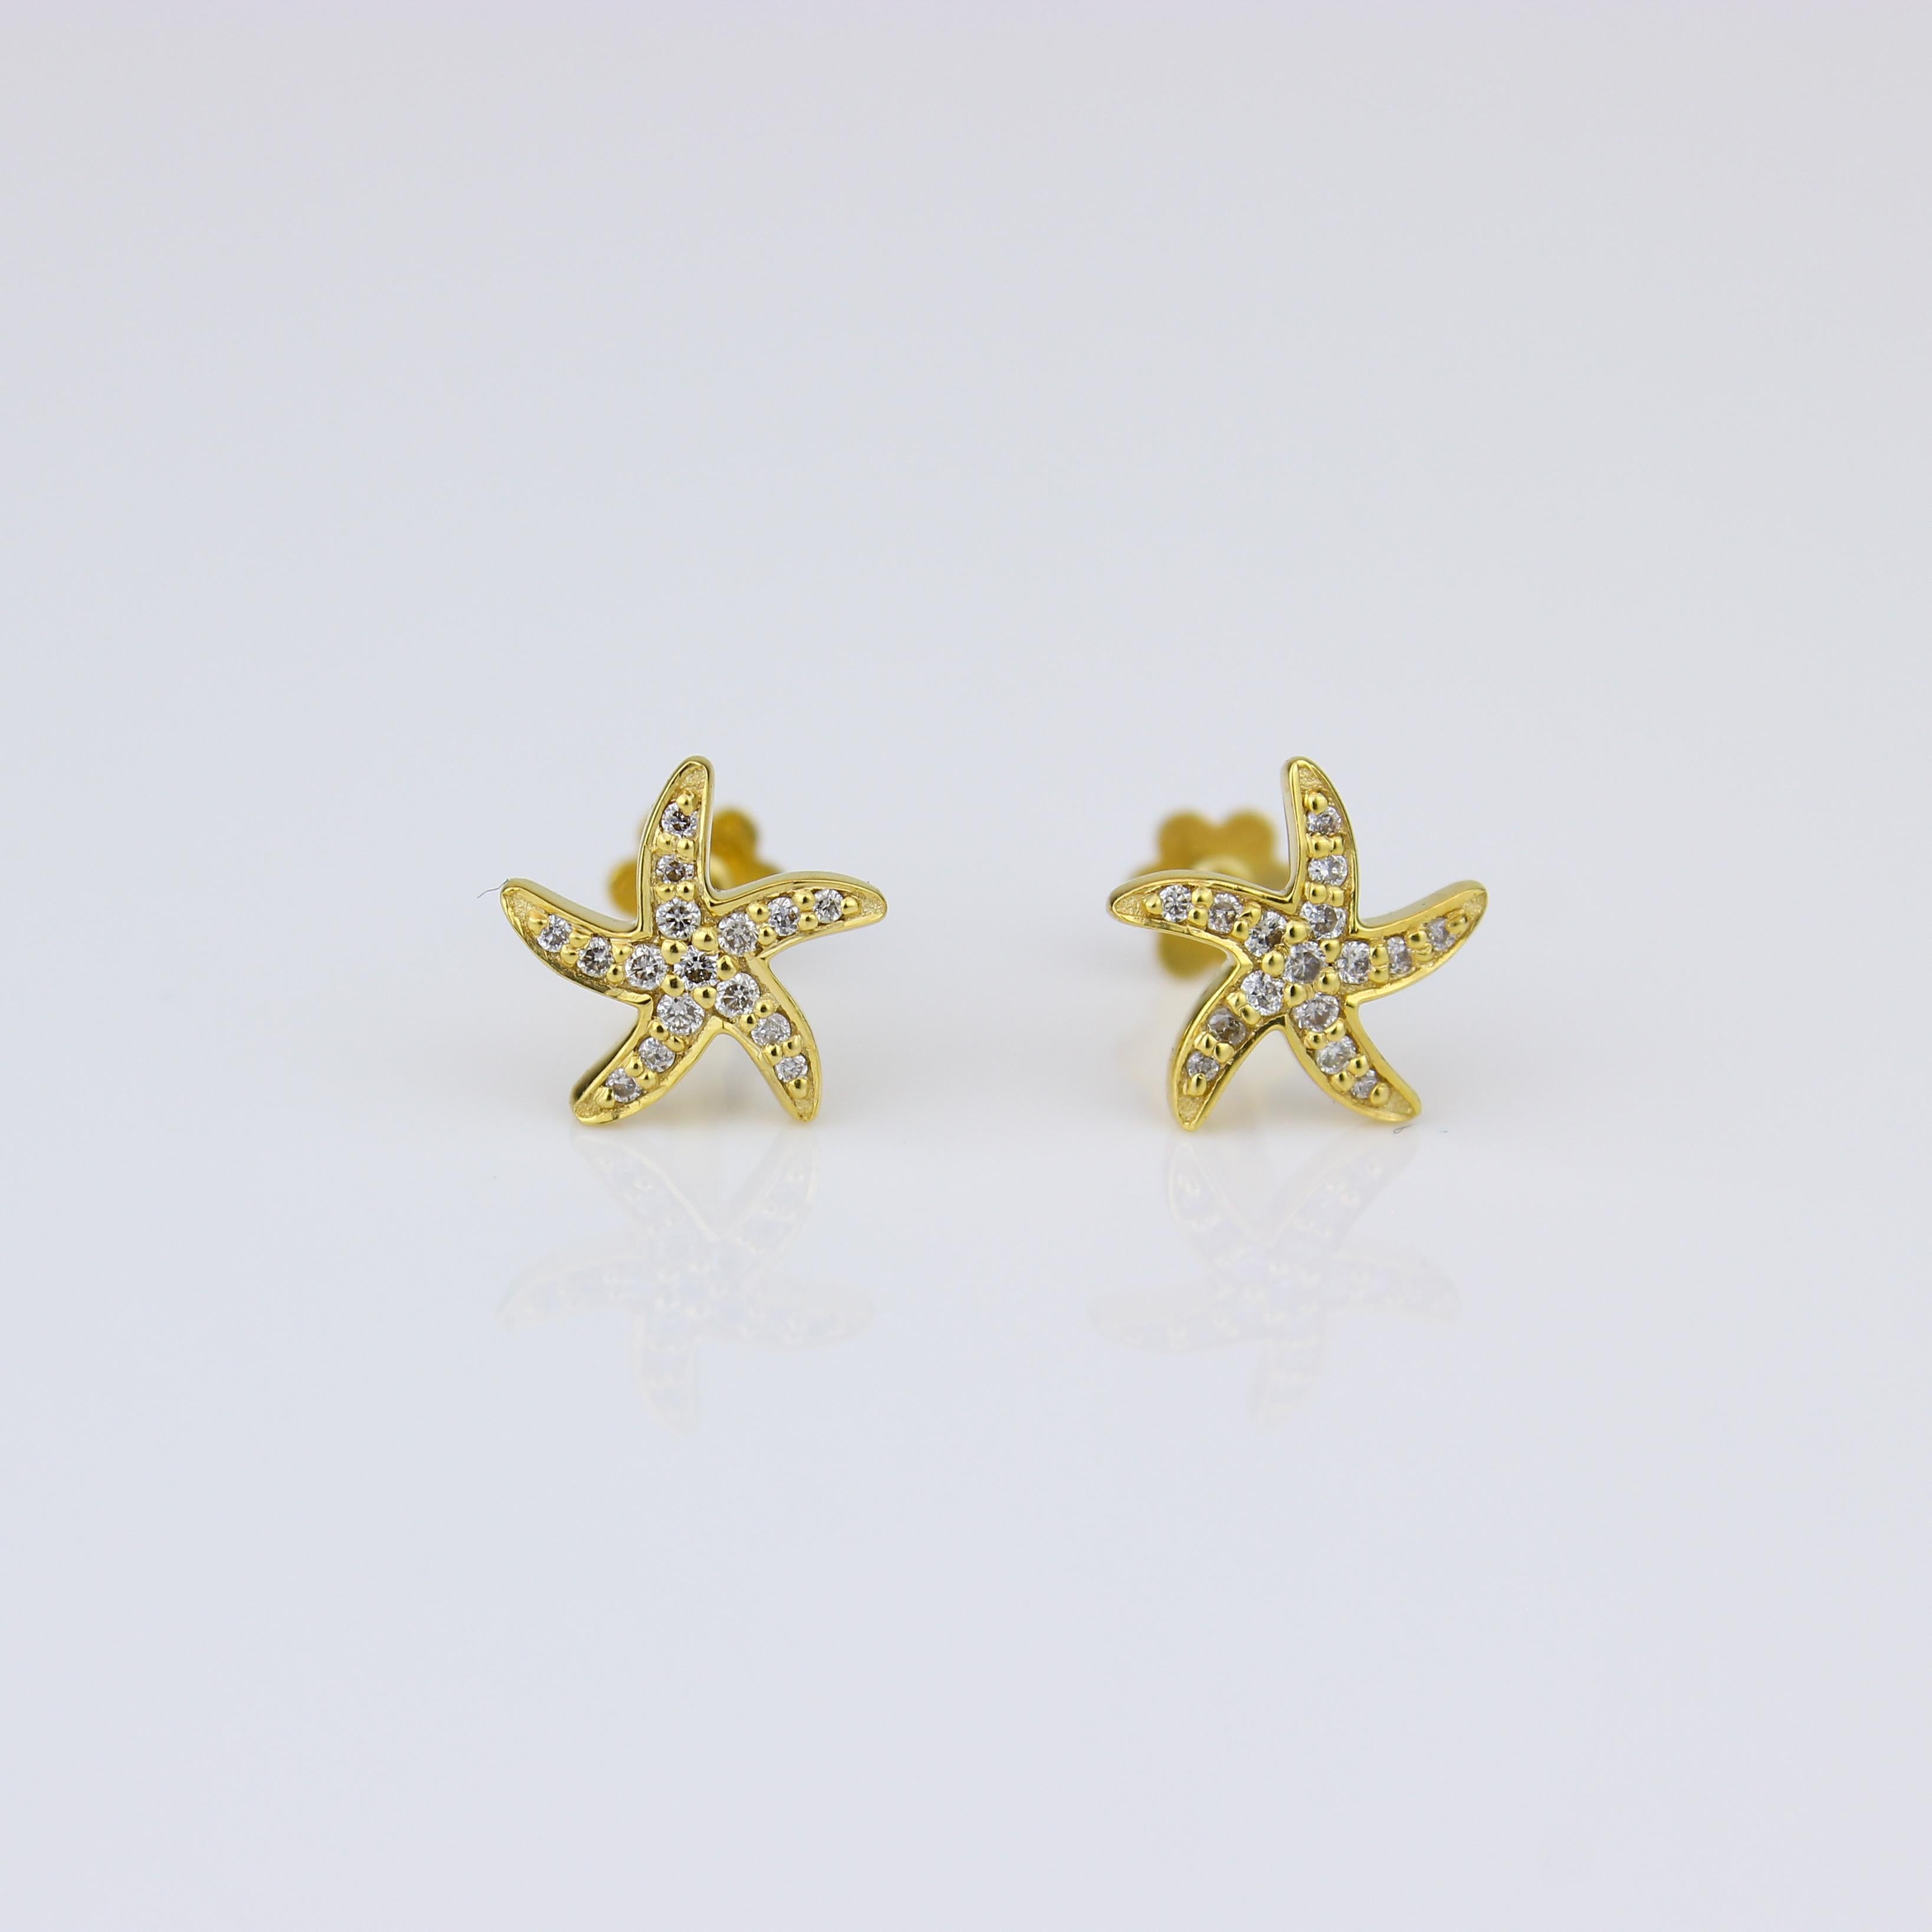 Beauté inspirée de la plage : Boucles d'oreilles étoile de mer en or massif 18 carats, conçues pour les filles (enfants). Ces charmantes boucles d'oreilles présentent de fantasques motifs d'étoiles de mer ornés de délicats diamants, apportant une